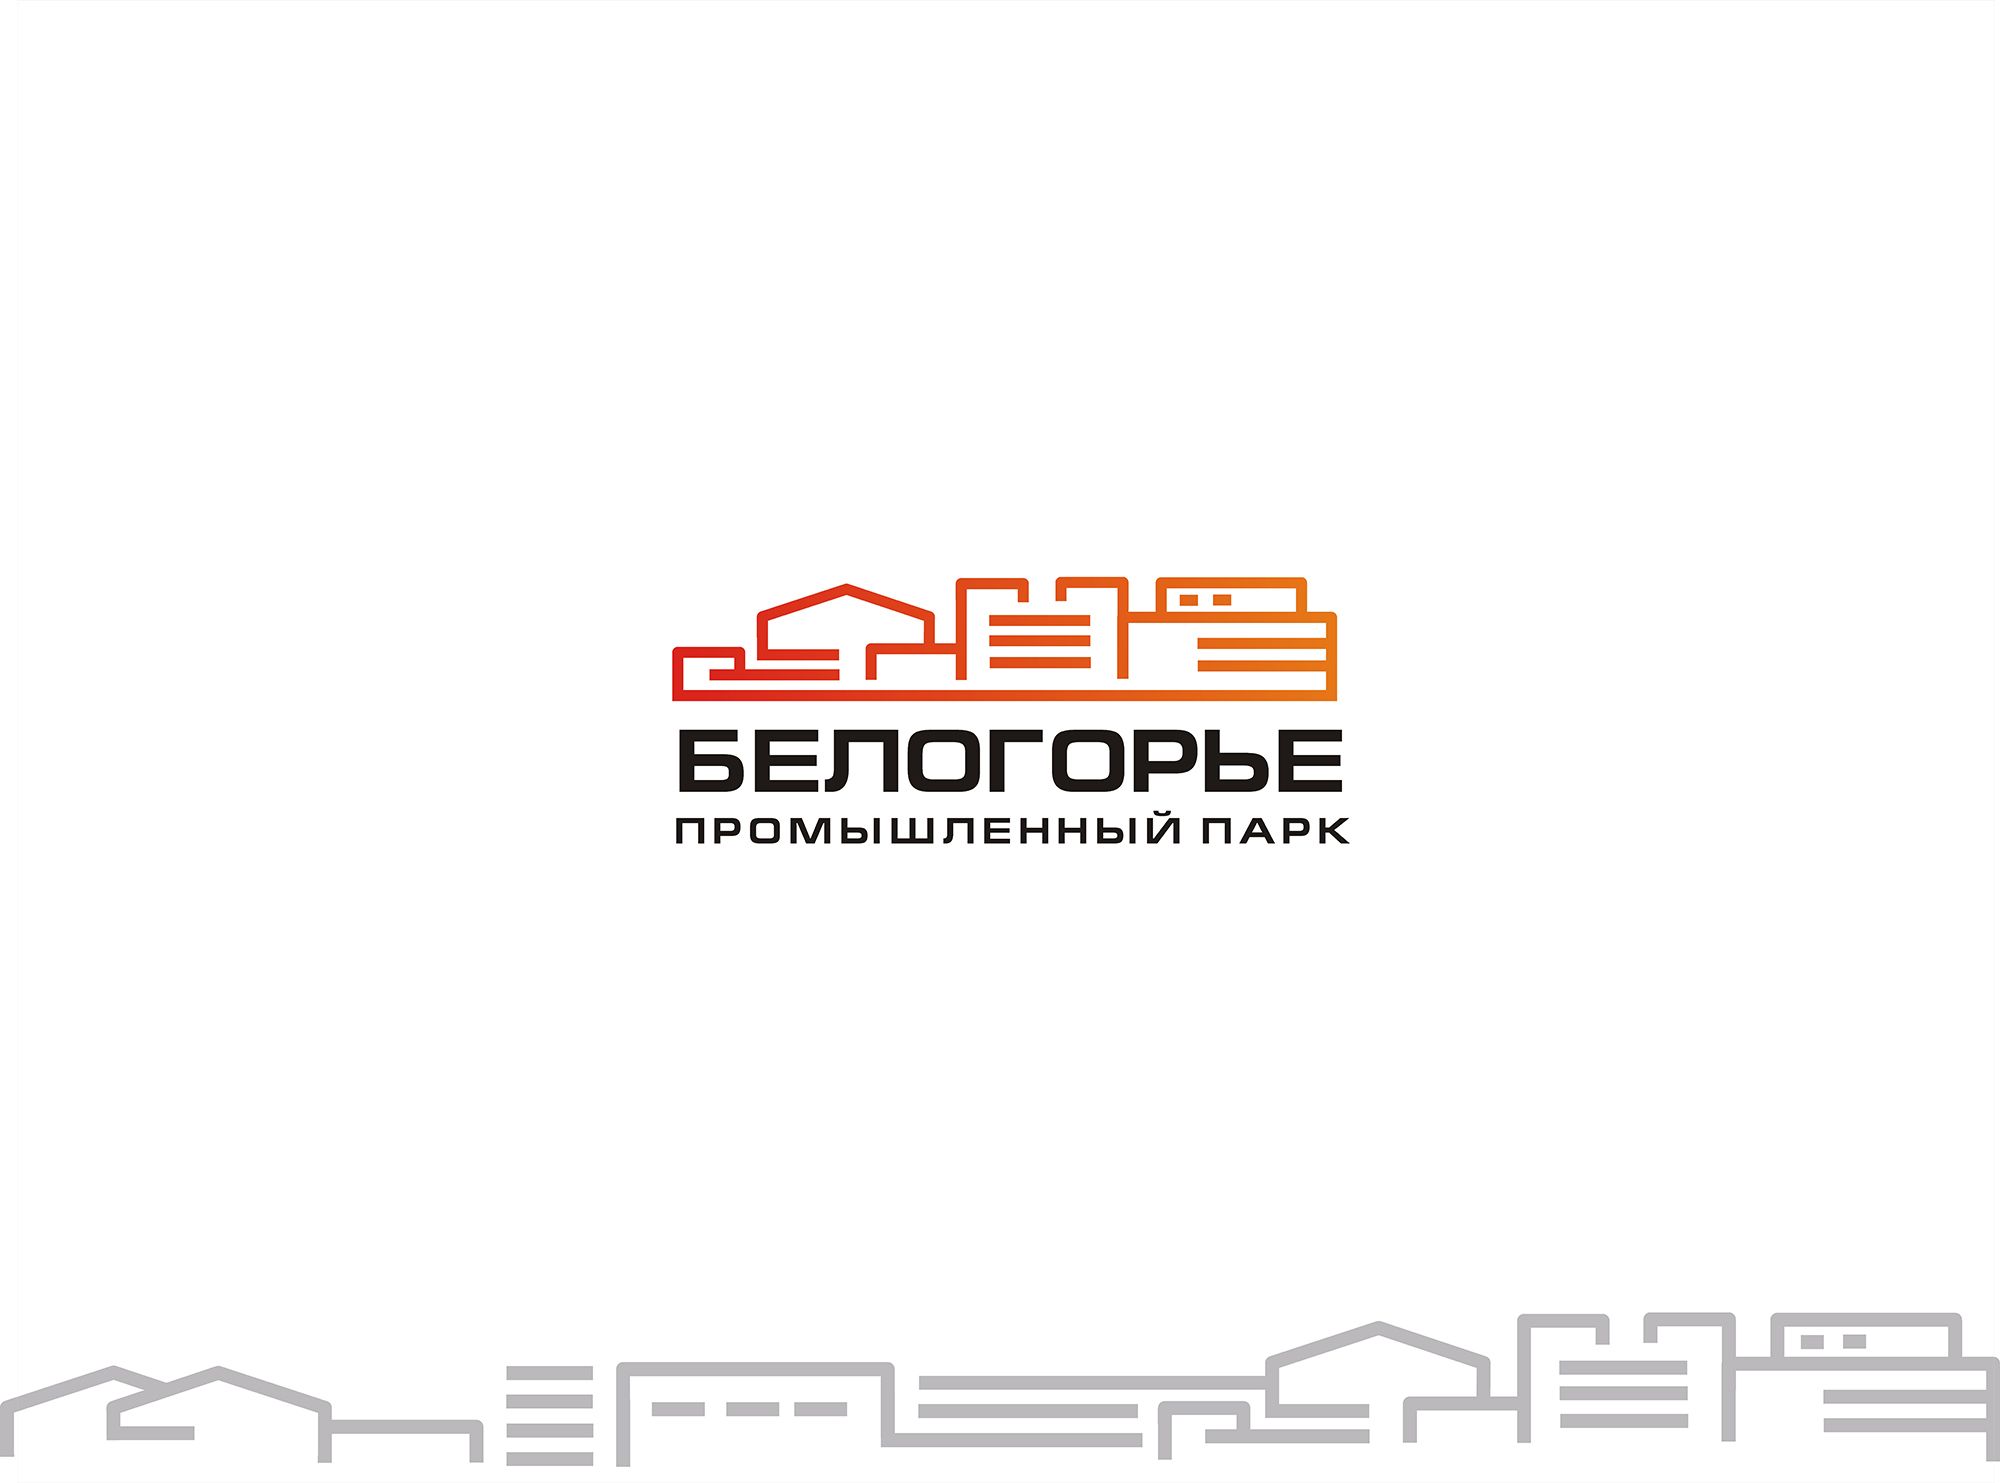 Лого и фирменный стиль для Промышленный парк БЕЛОГОРЬЕ - дизайнер bodriq